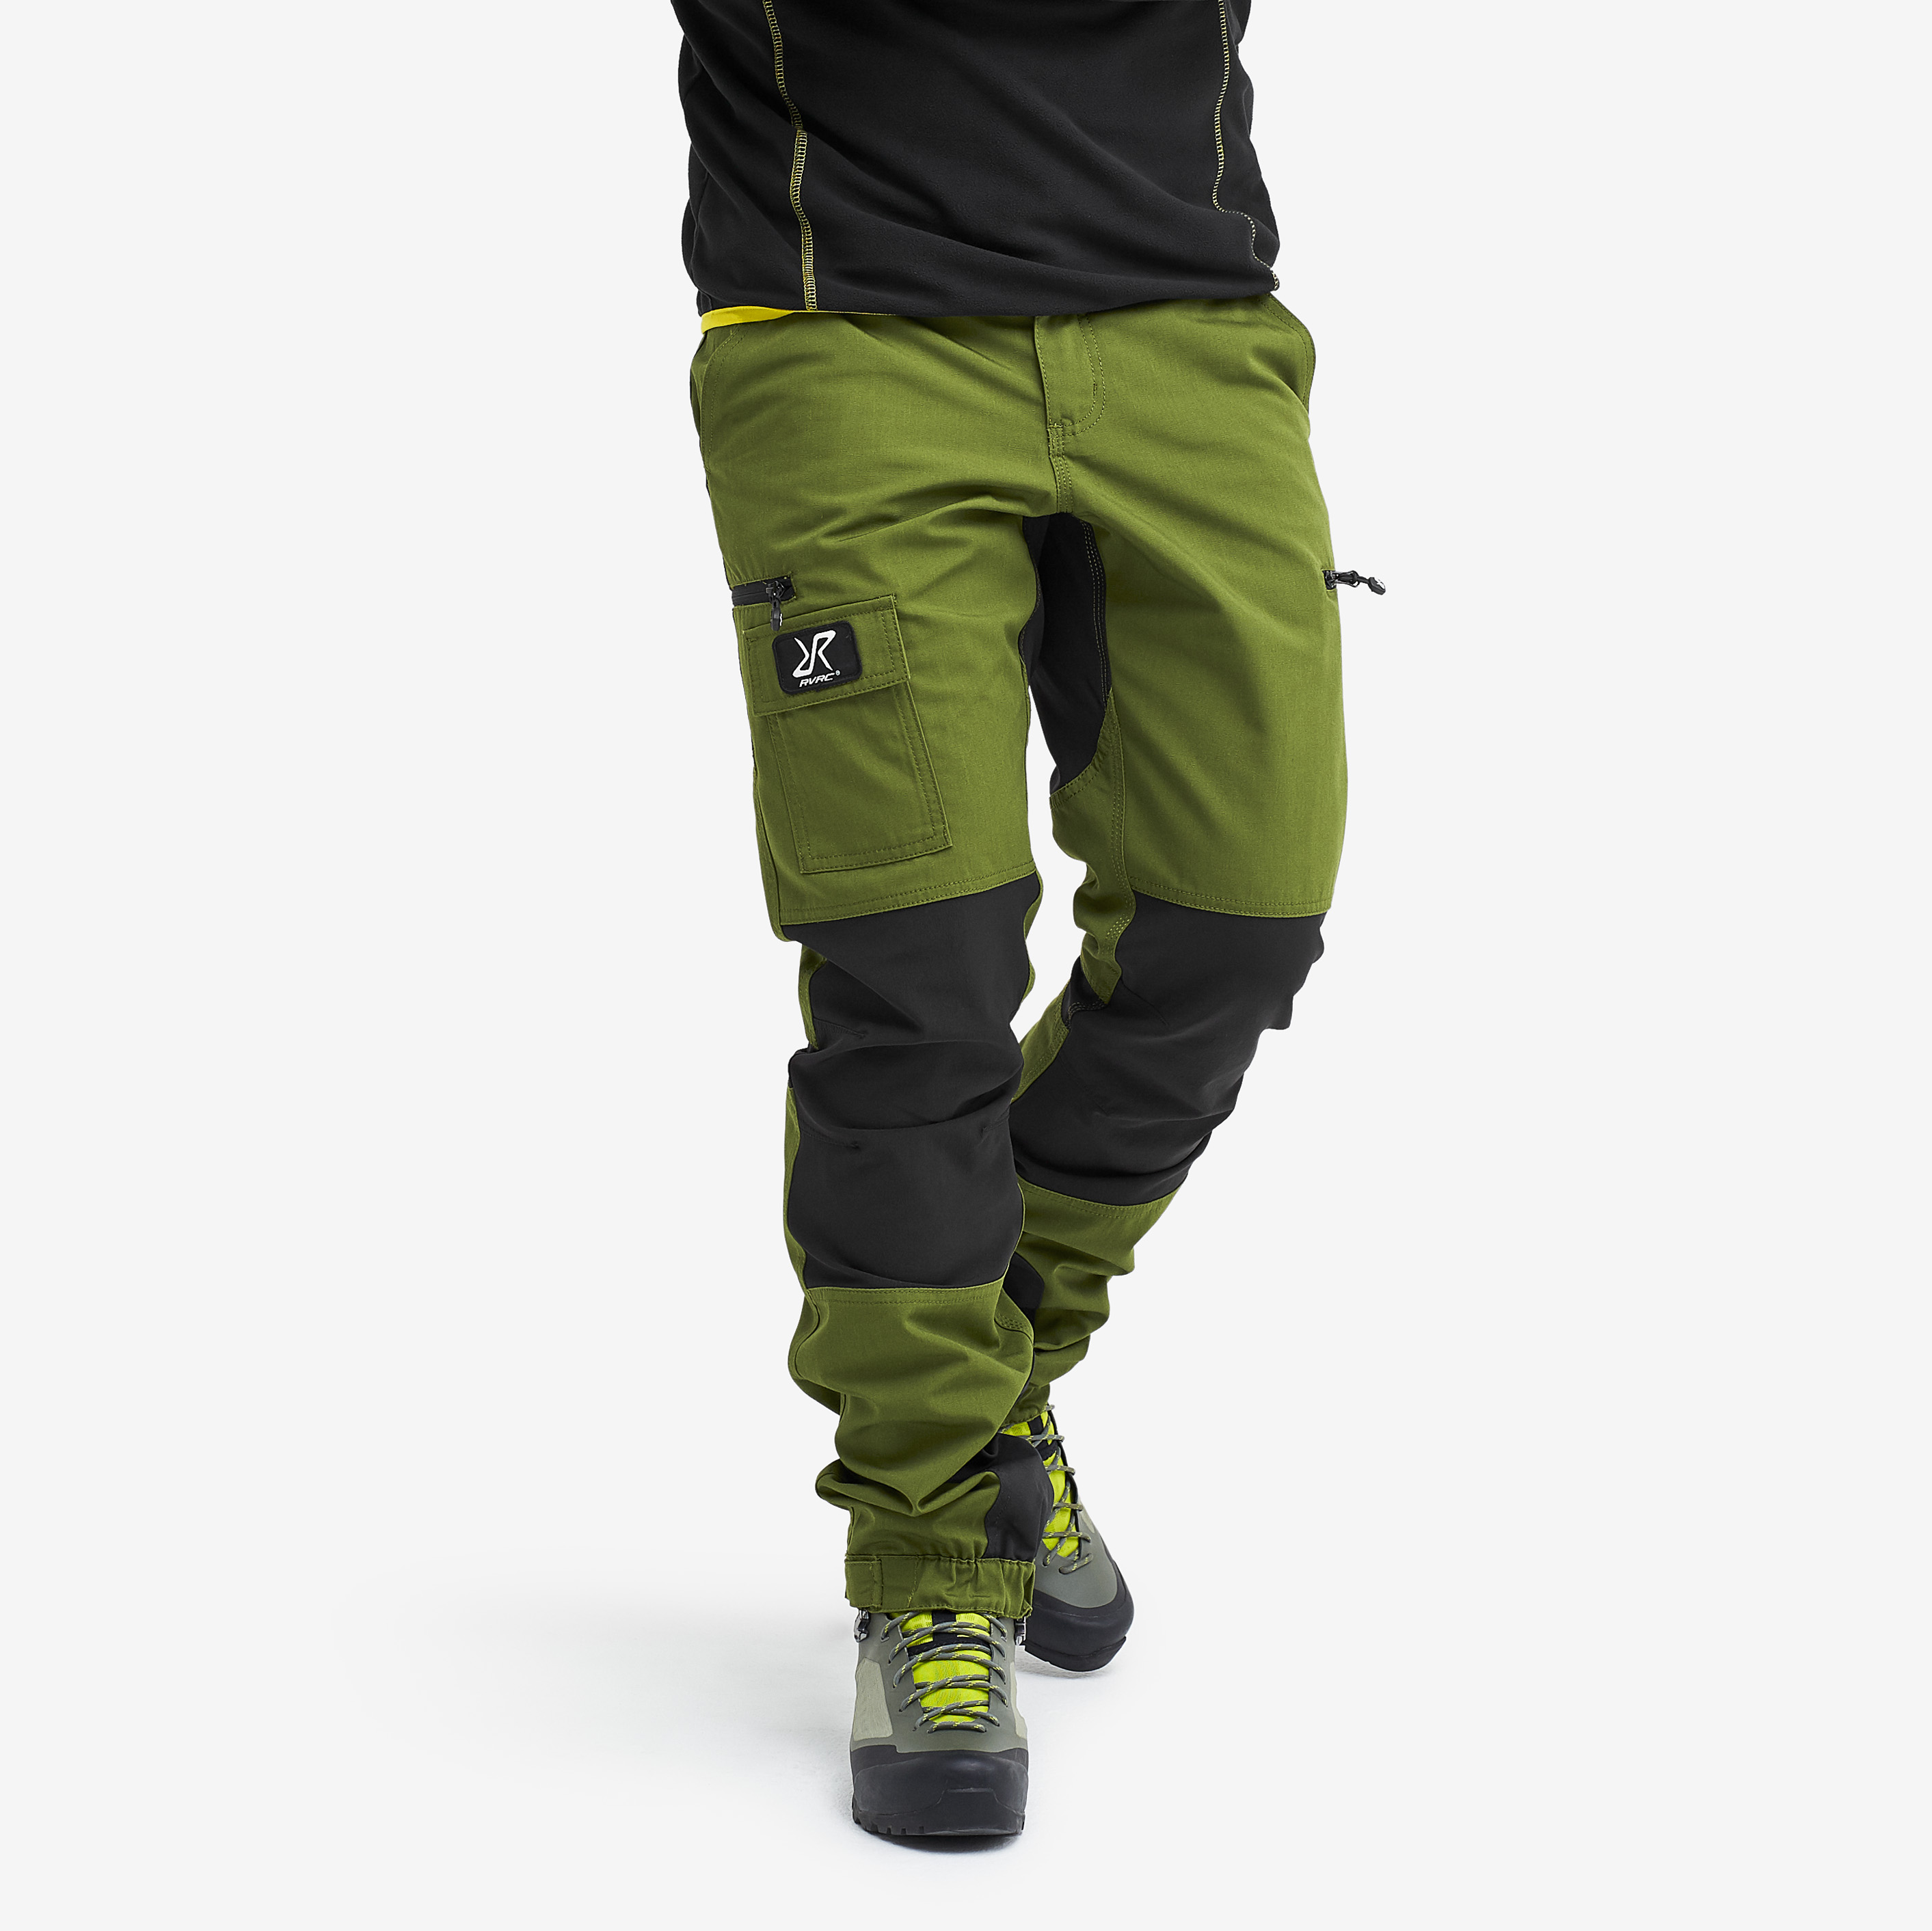 Nordwand outdoorové kalhoty pro muže v zelené barvě